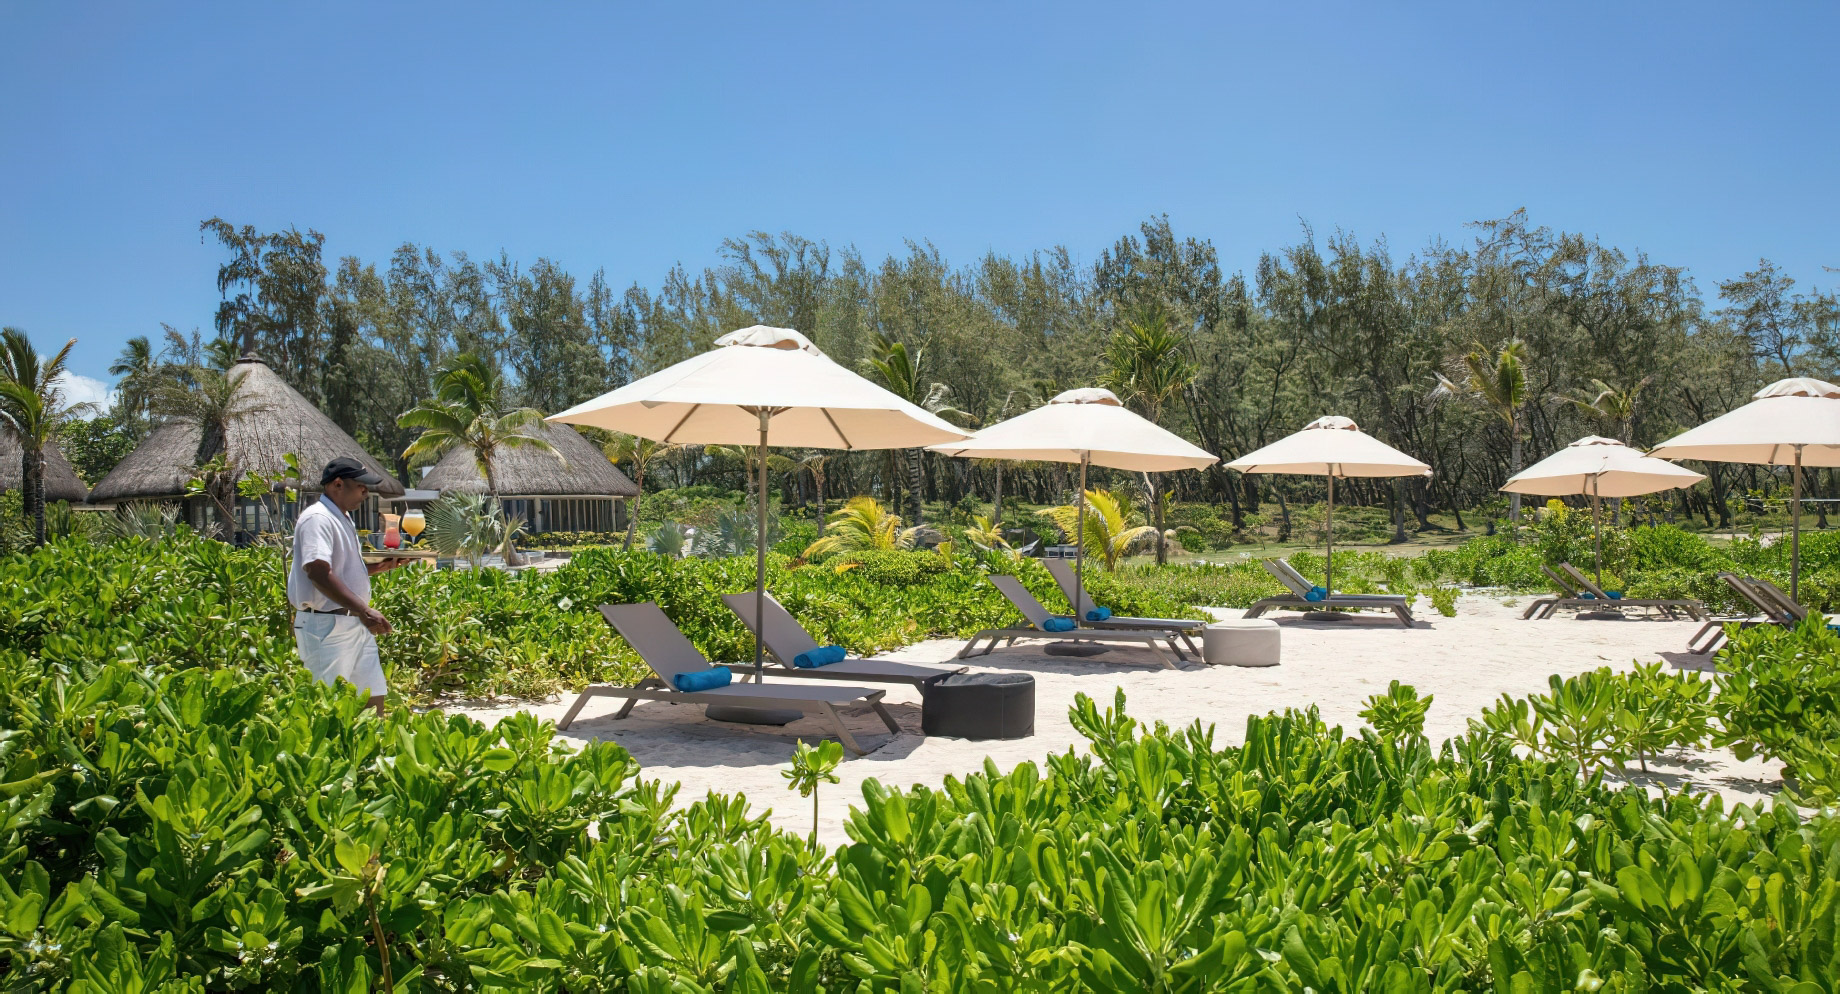 Anantara Iko Mauritius Resort & Villas – Plaine Magnien, Mauritius – Sunbeds